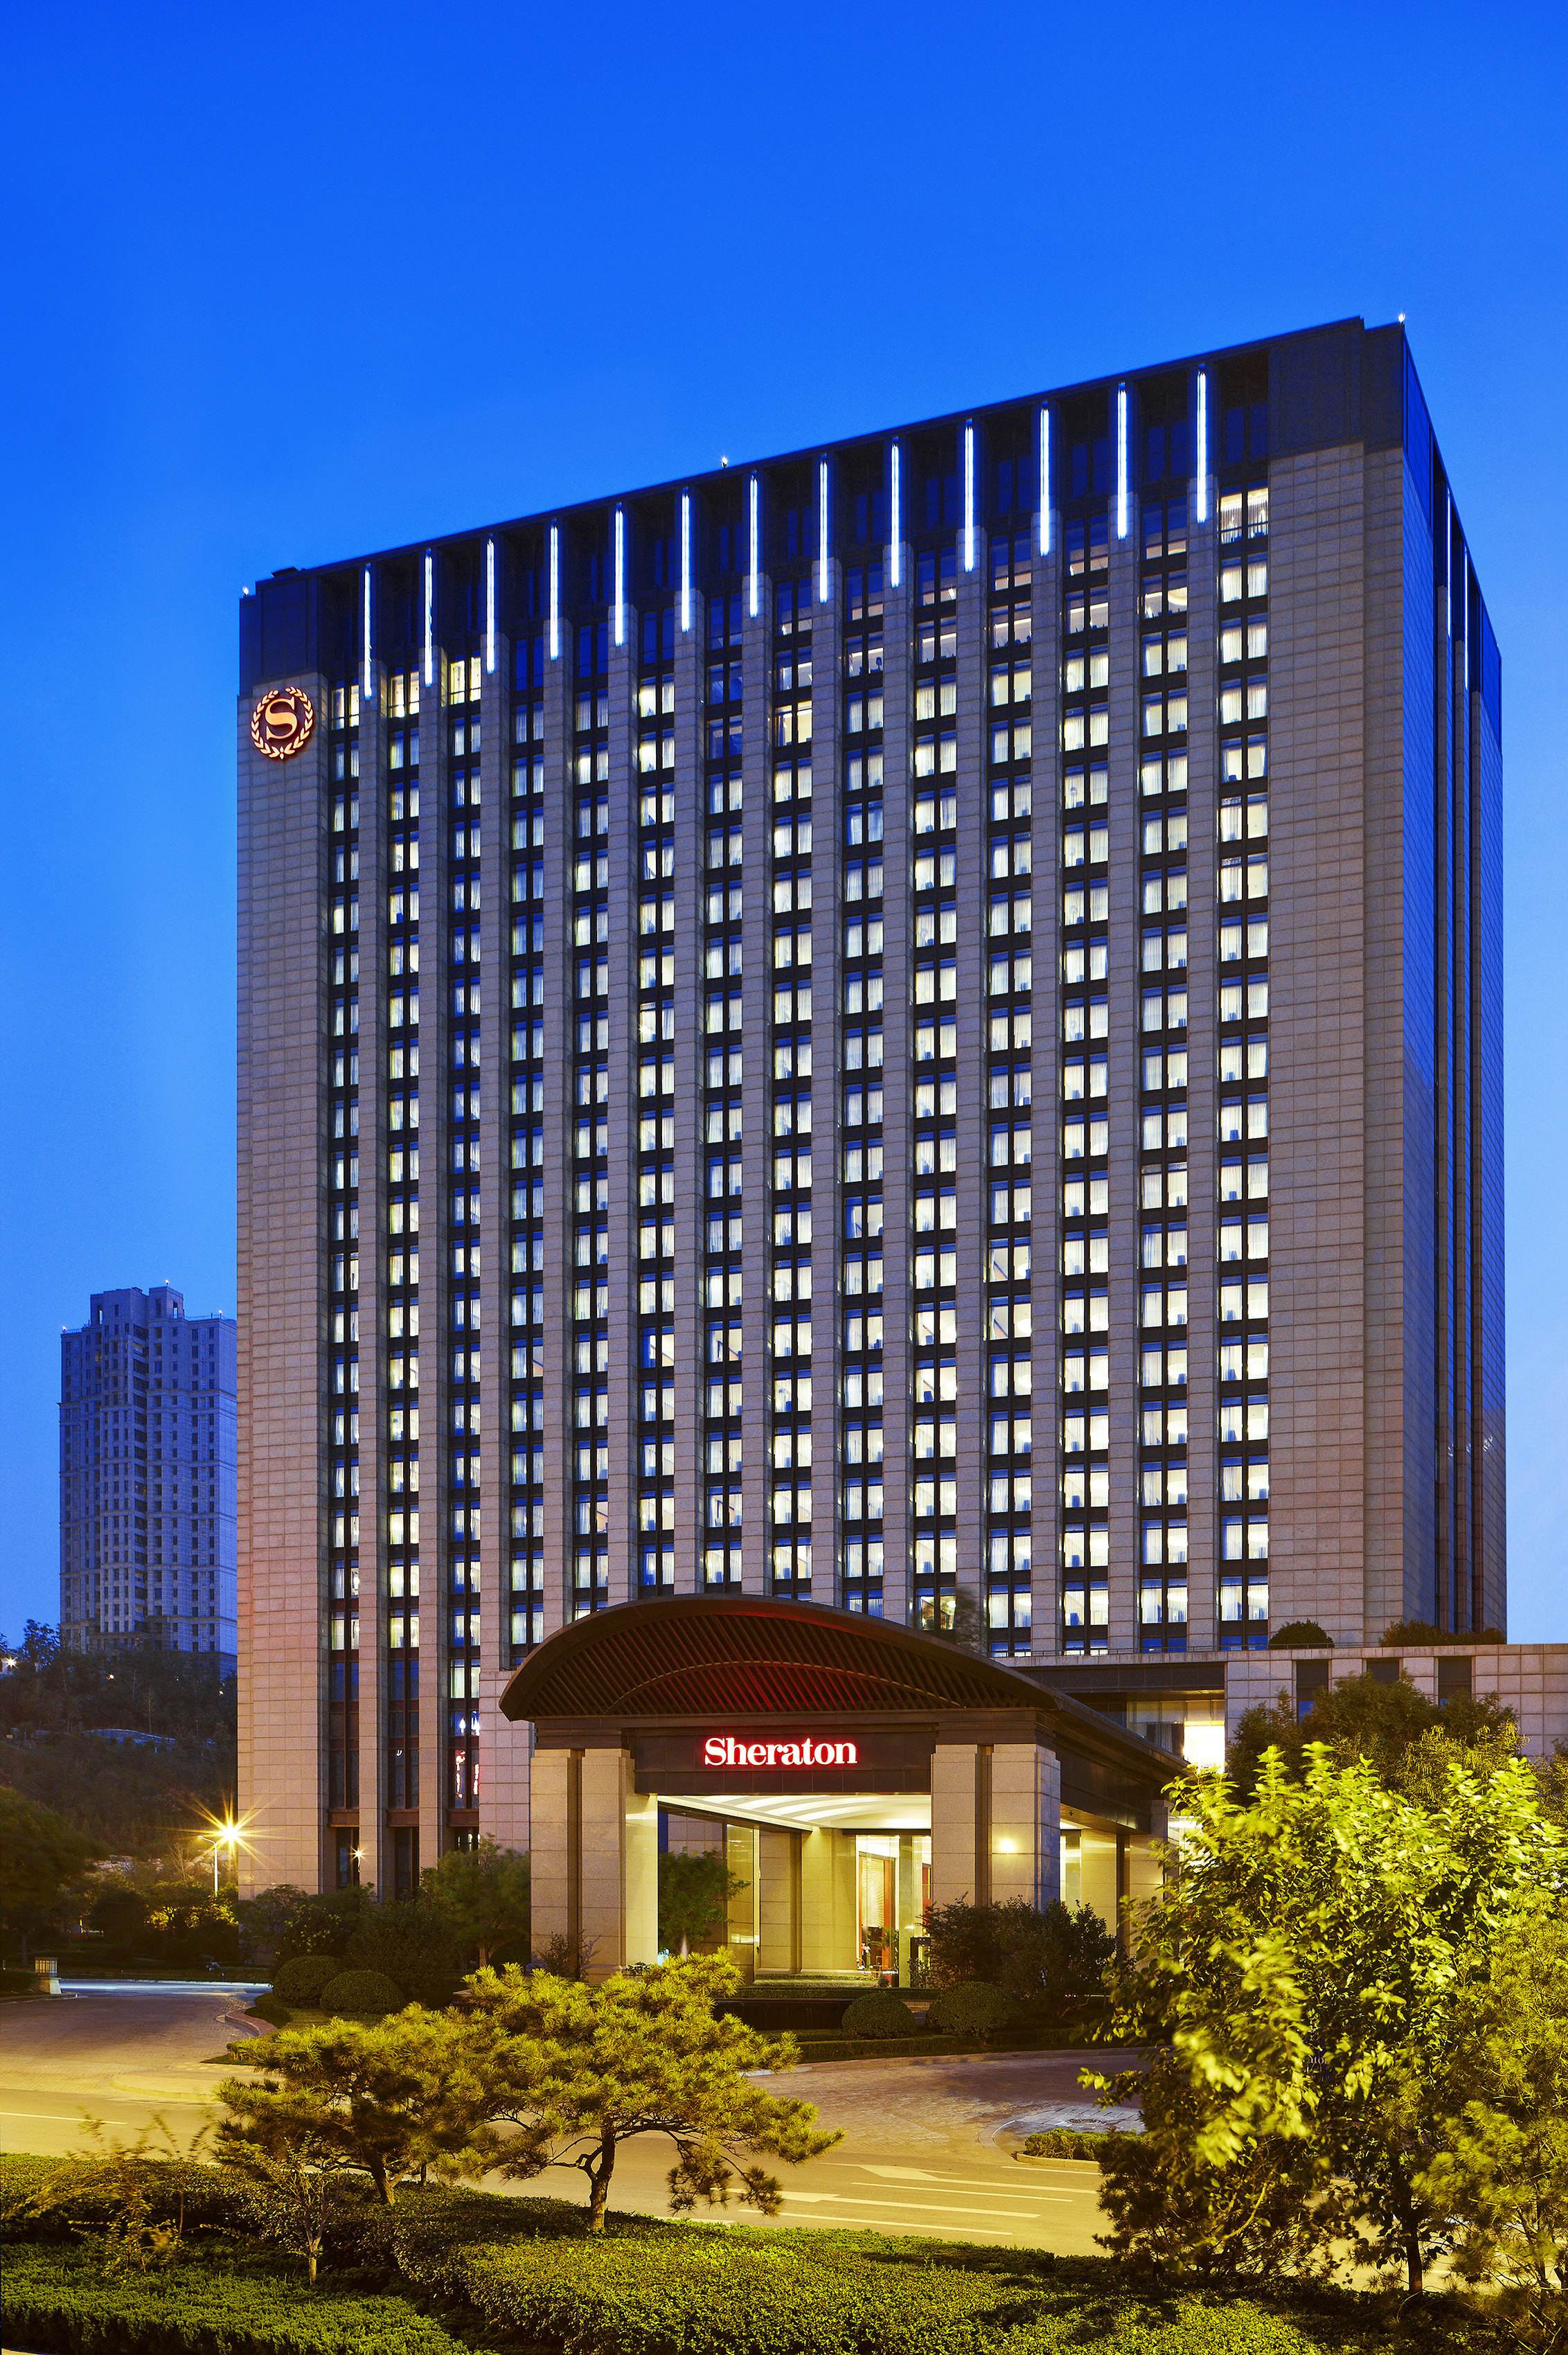 万丽酒店品牌亮相中国南部大湾区 | TTG China